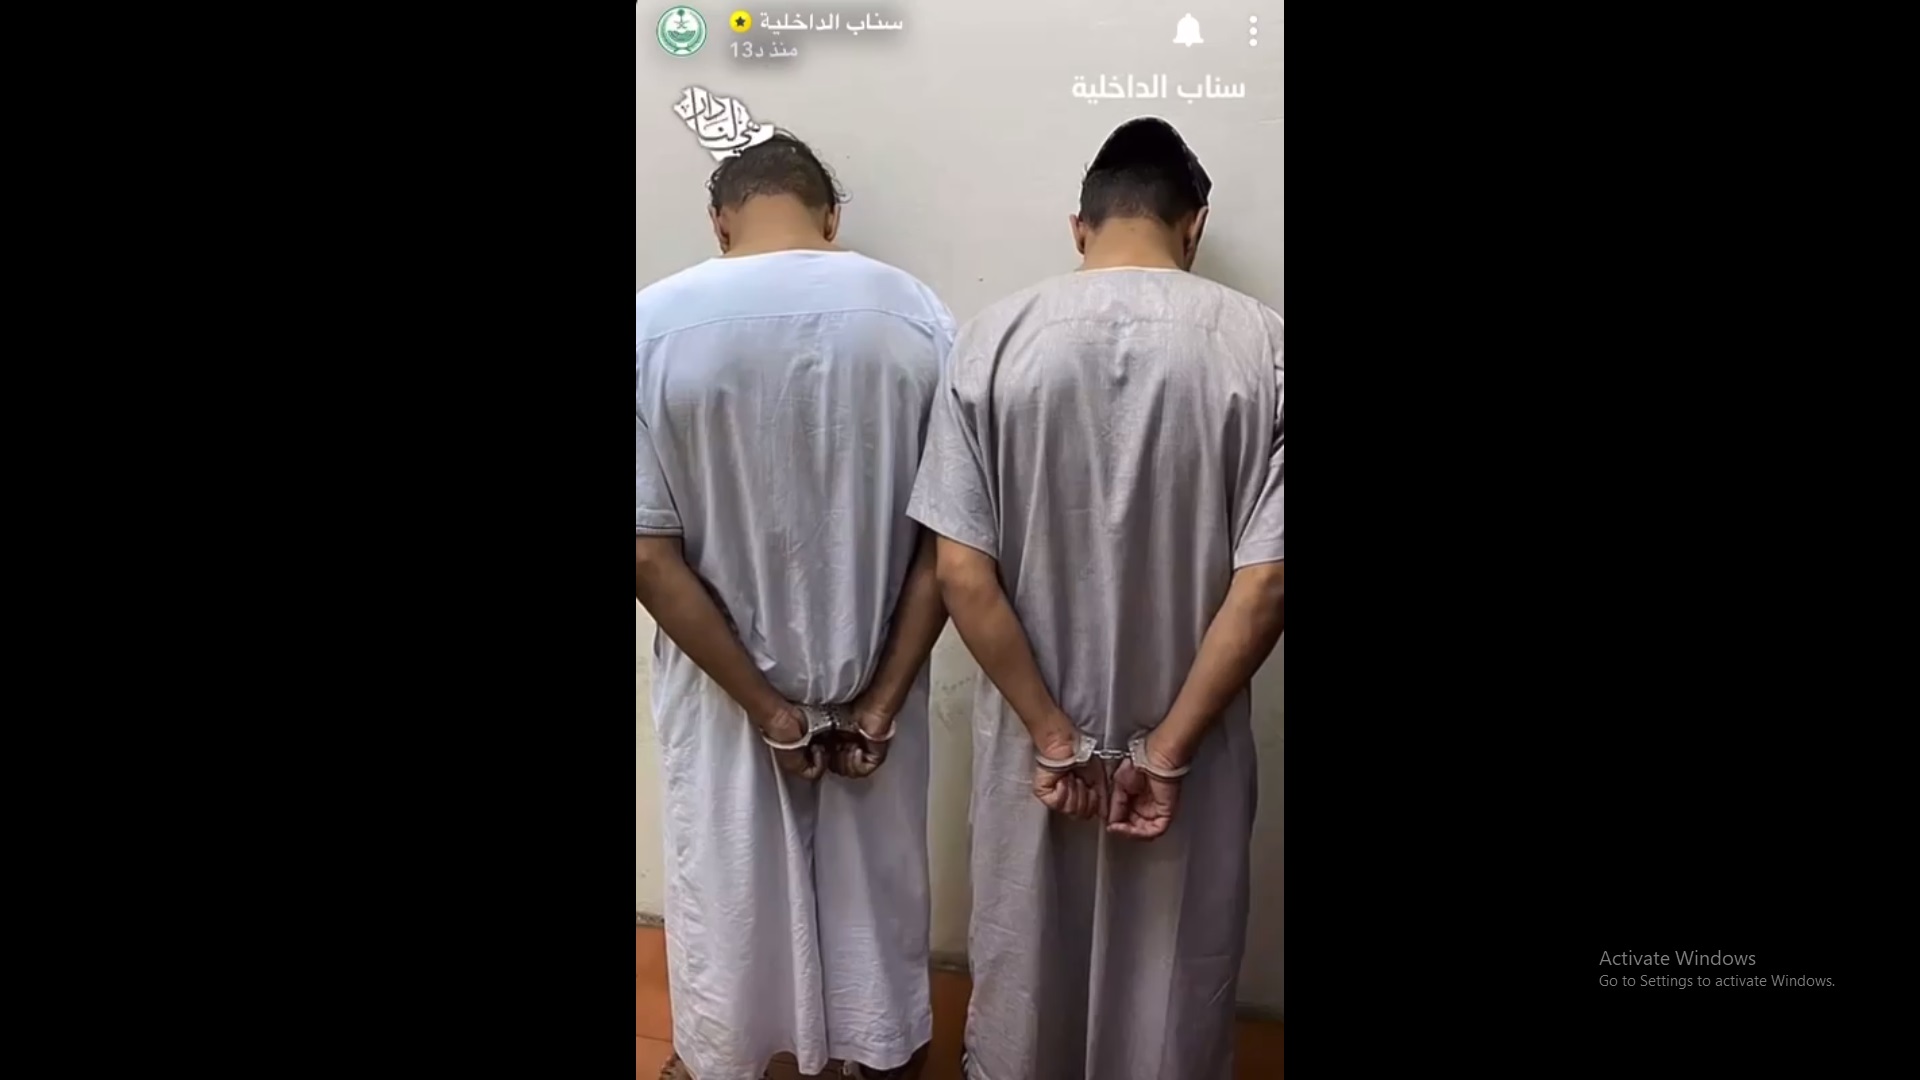 فيديو .. القبض على مواطنين تباهيا بإطلاق النار في مكة المكرمة